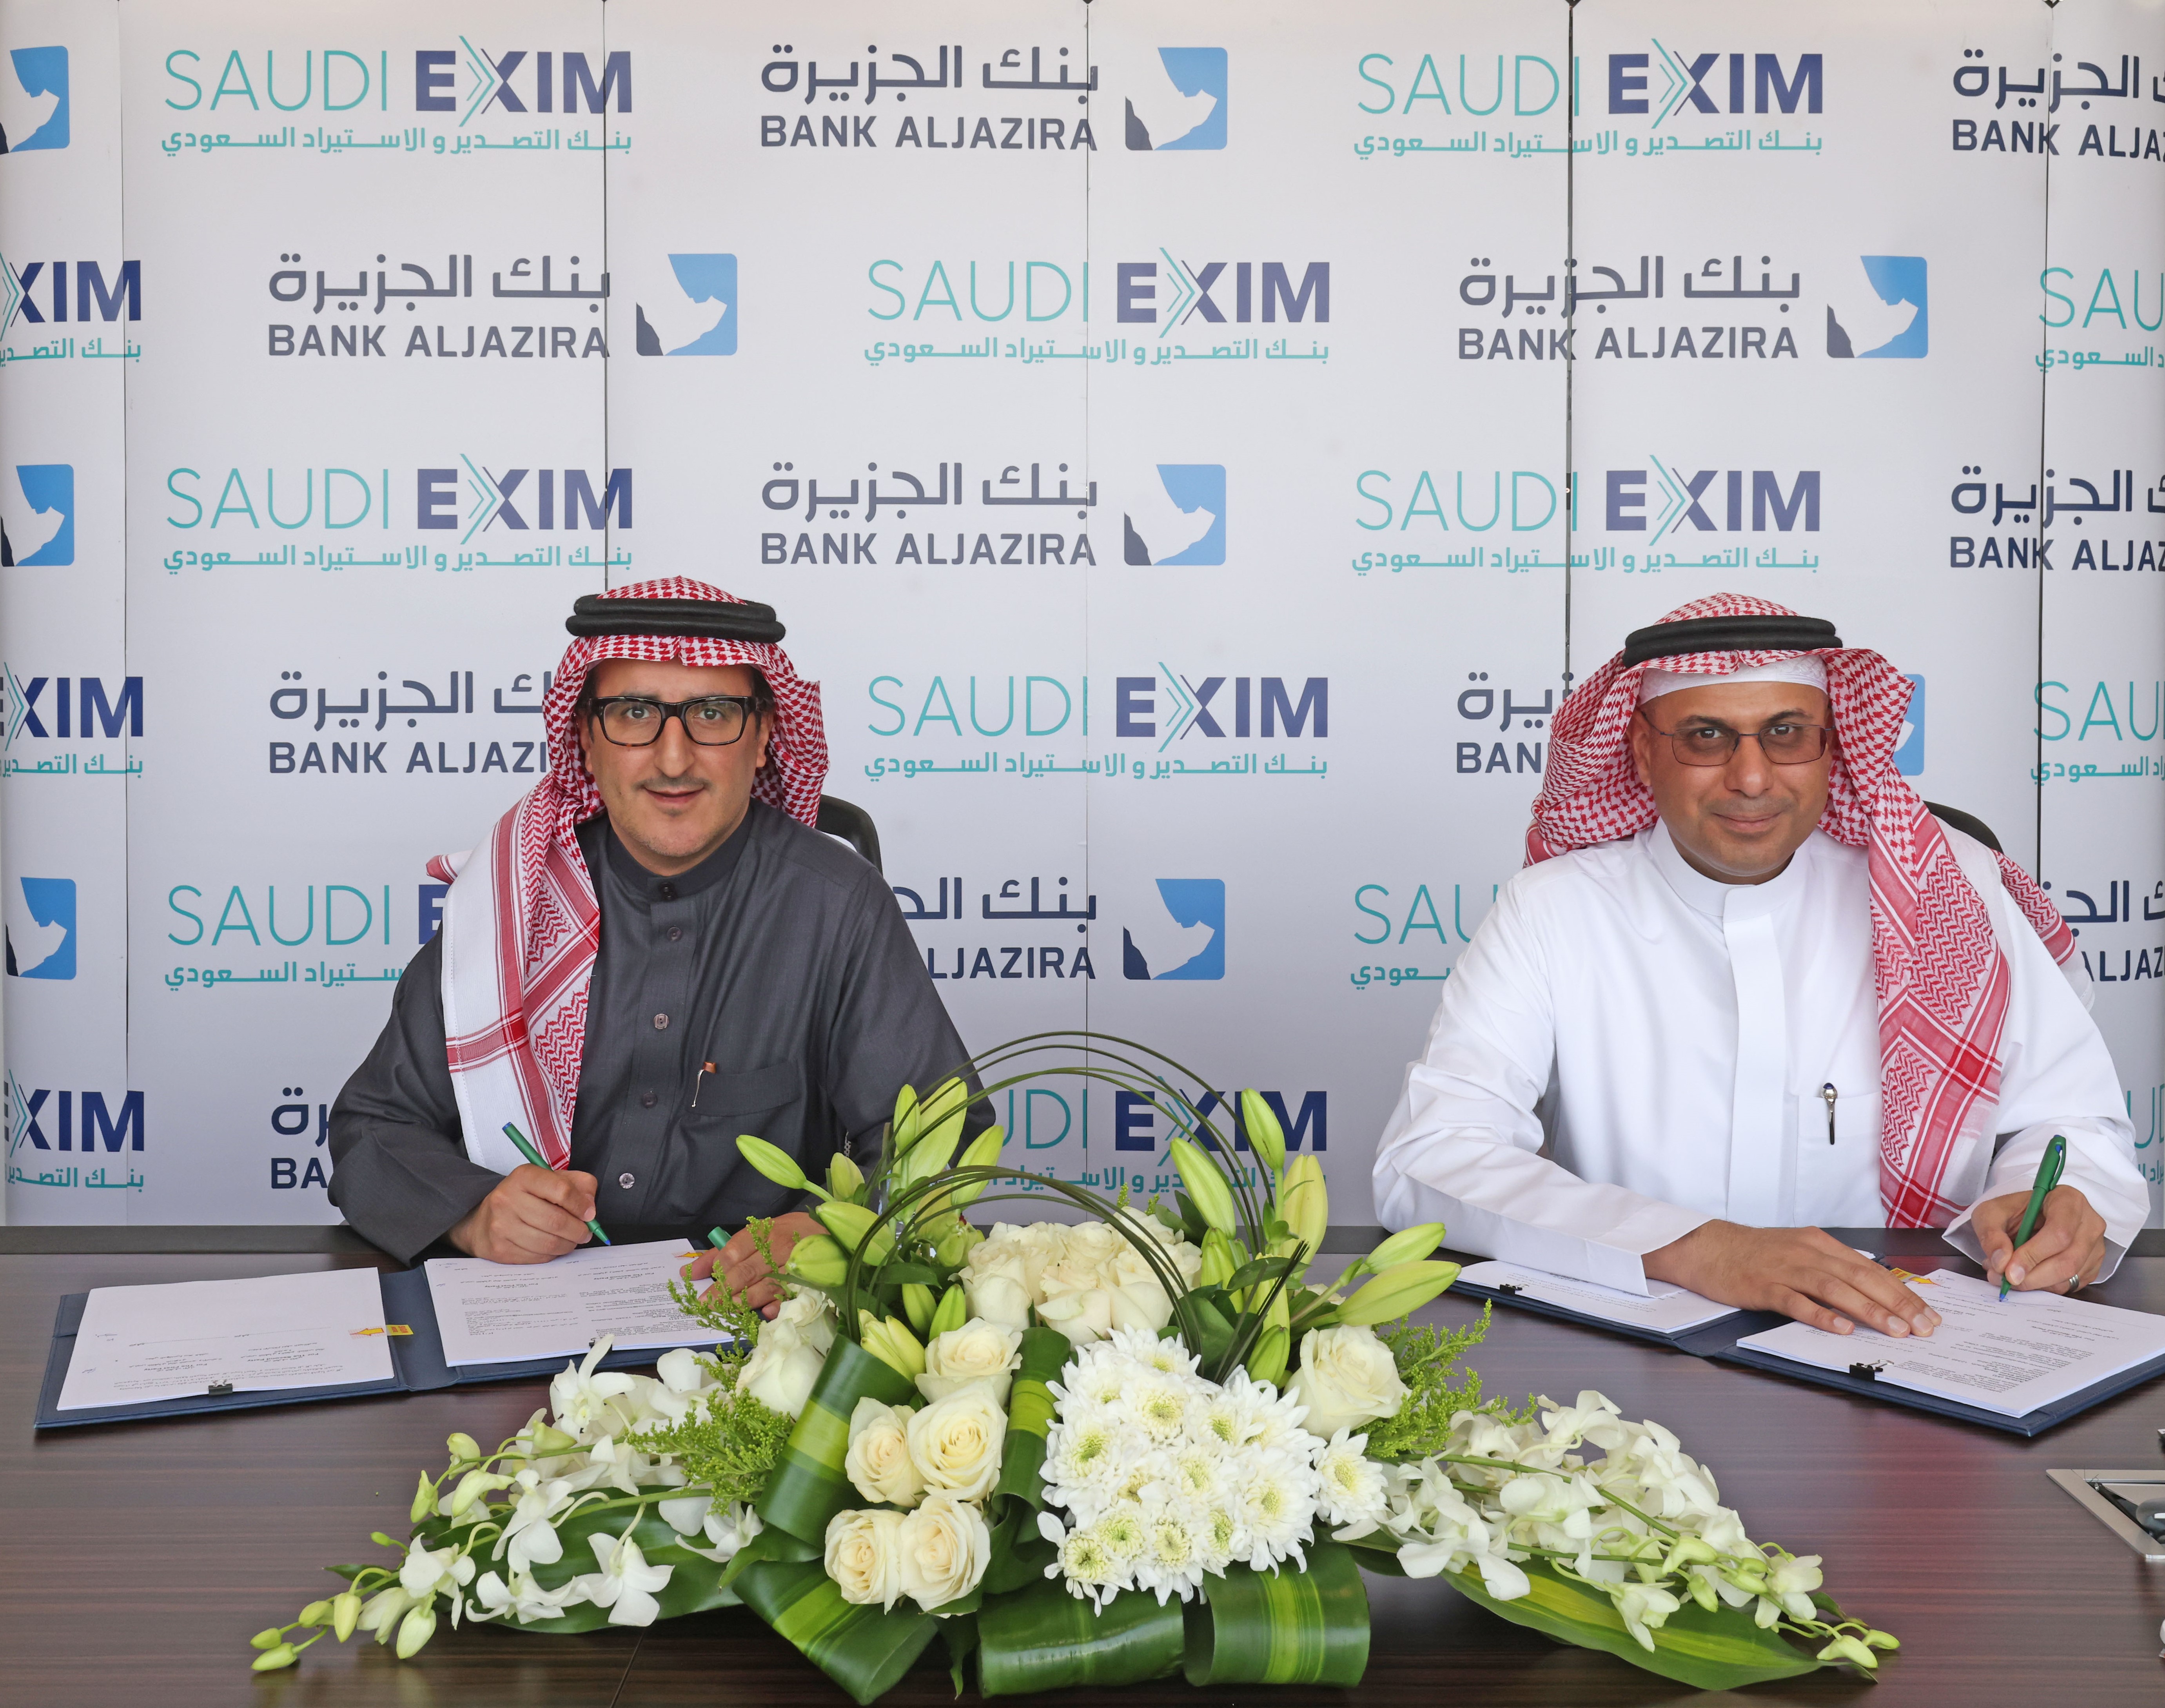 توقيع اتفاقية تعاون ووثيقة تأمين تعزيز اعتمادات مستندية بين بنك التصدير والاستيراد السعودي وبنك الجزيرة